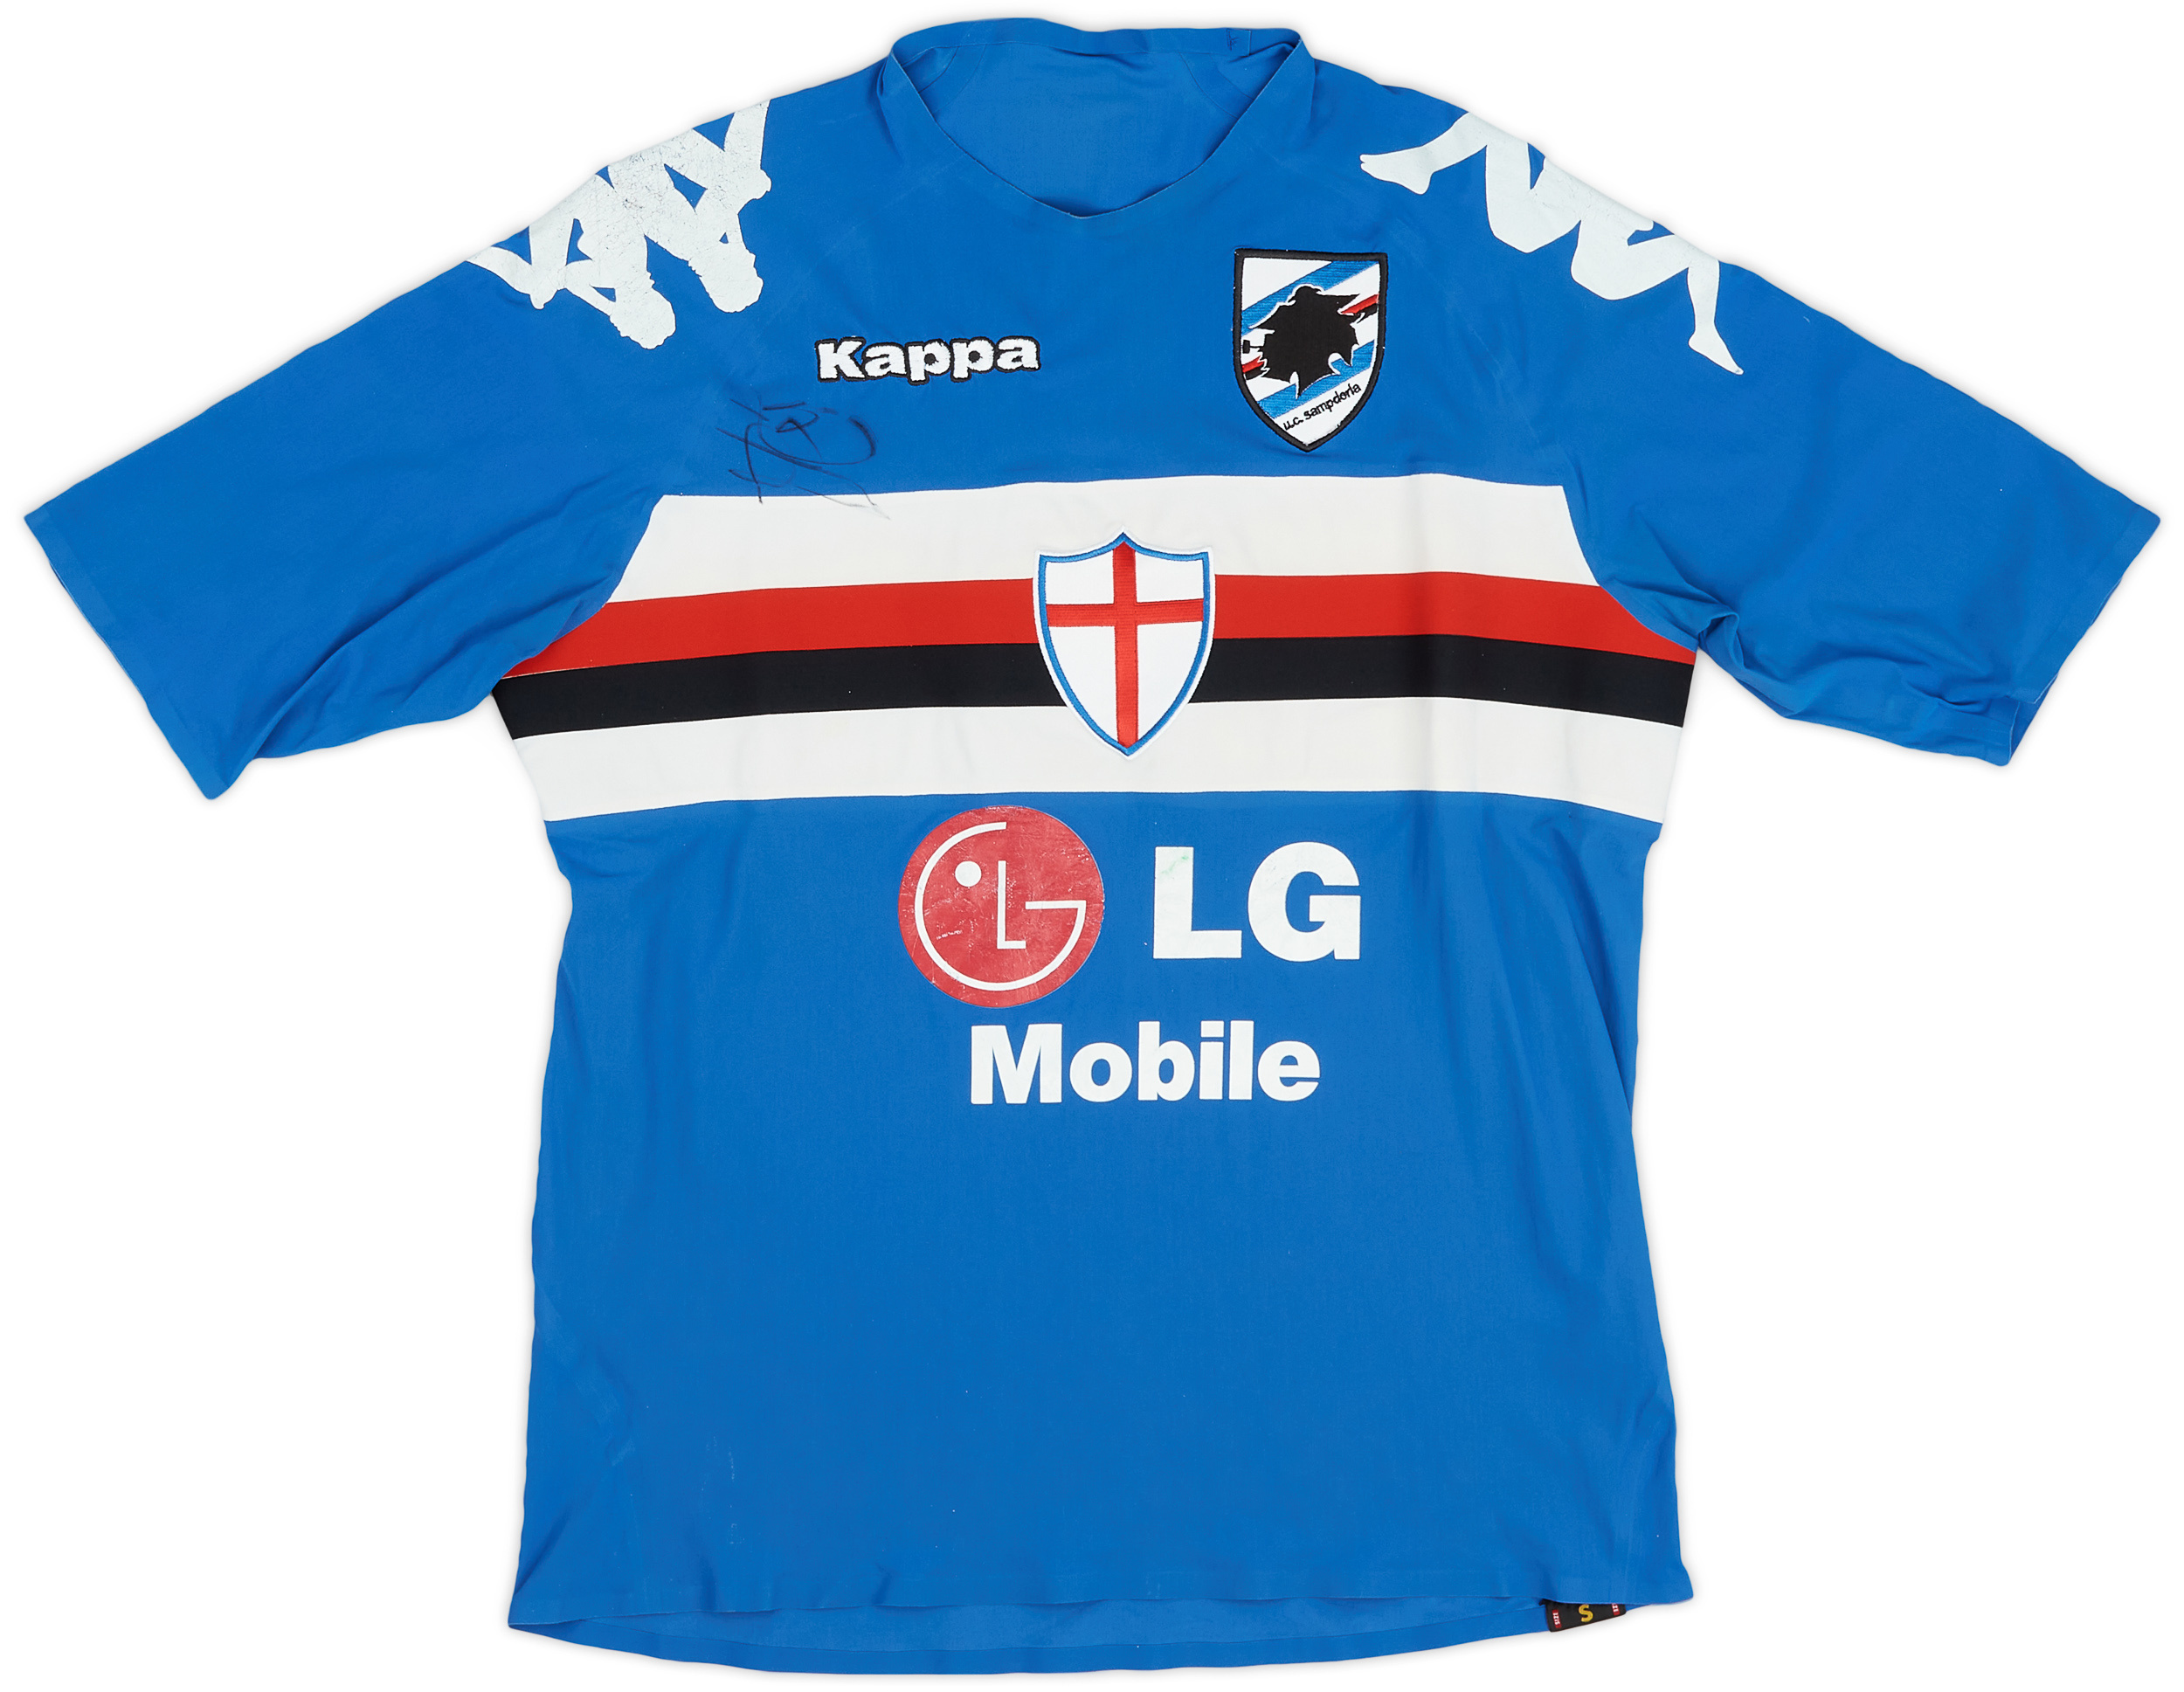 2005-07 Sampdoria Player Issue Signed 'Coppa Italia' Home Shirt - 6/10 - ()